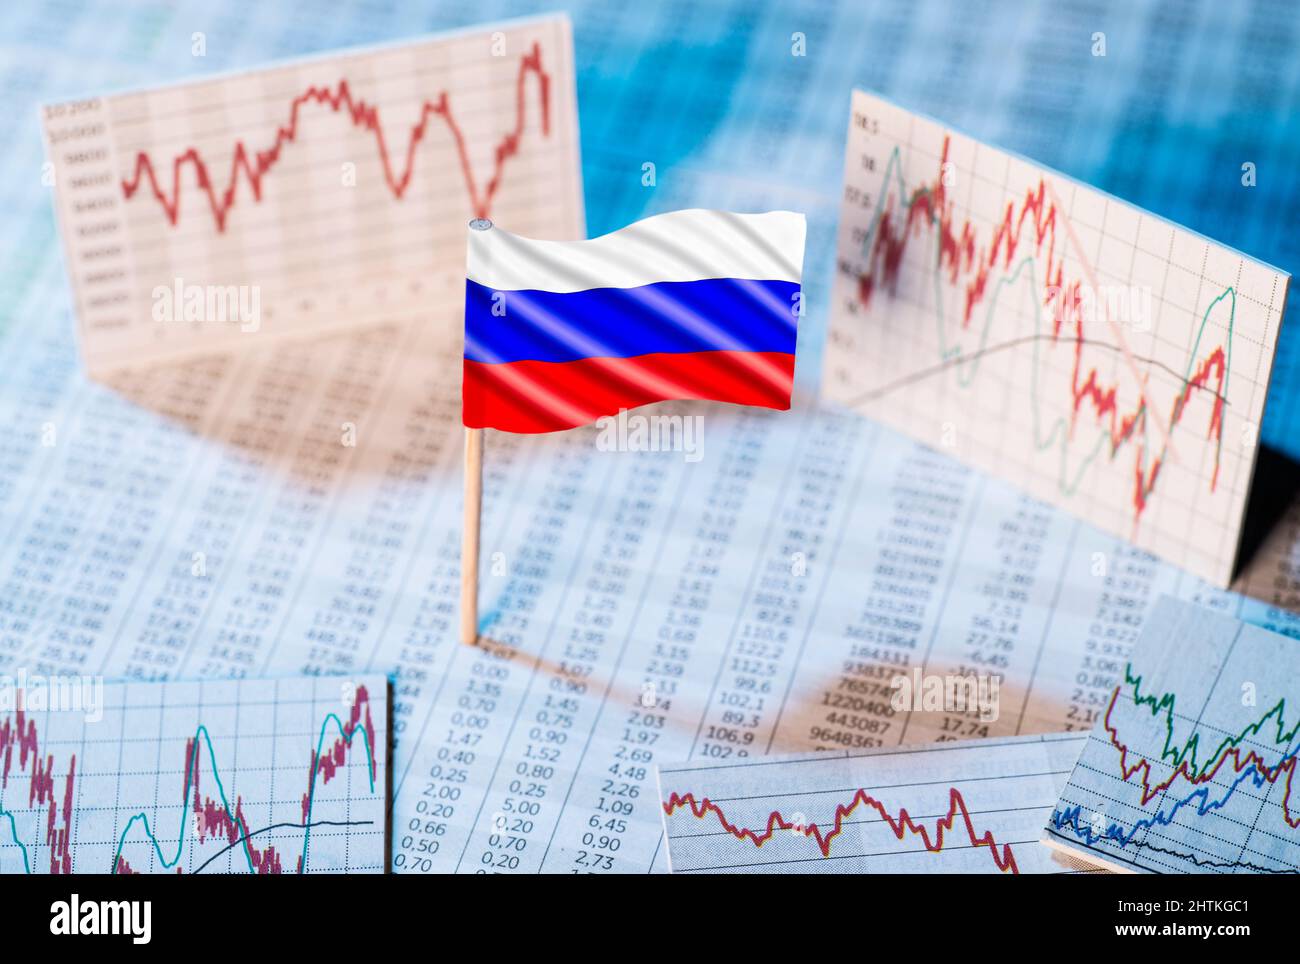 Bandera rusa con tablas de tipos de cambio y gráficos de desarrollo económico Foto de stock